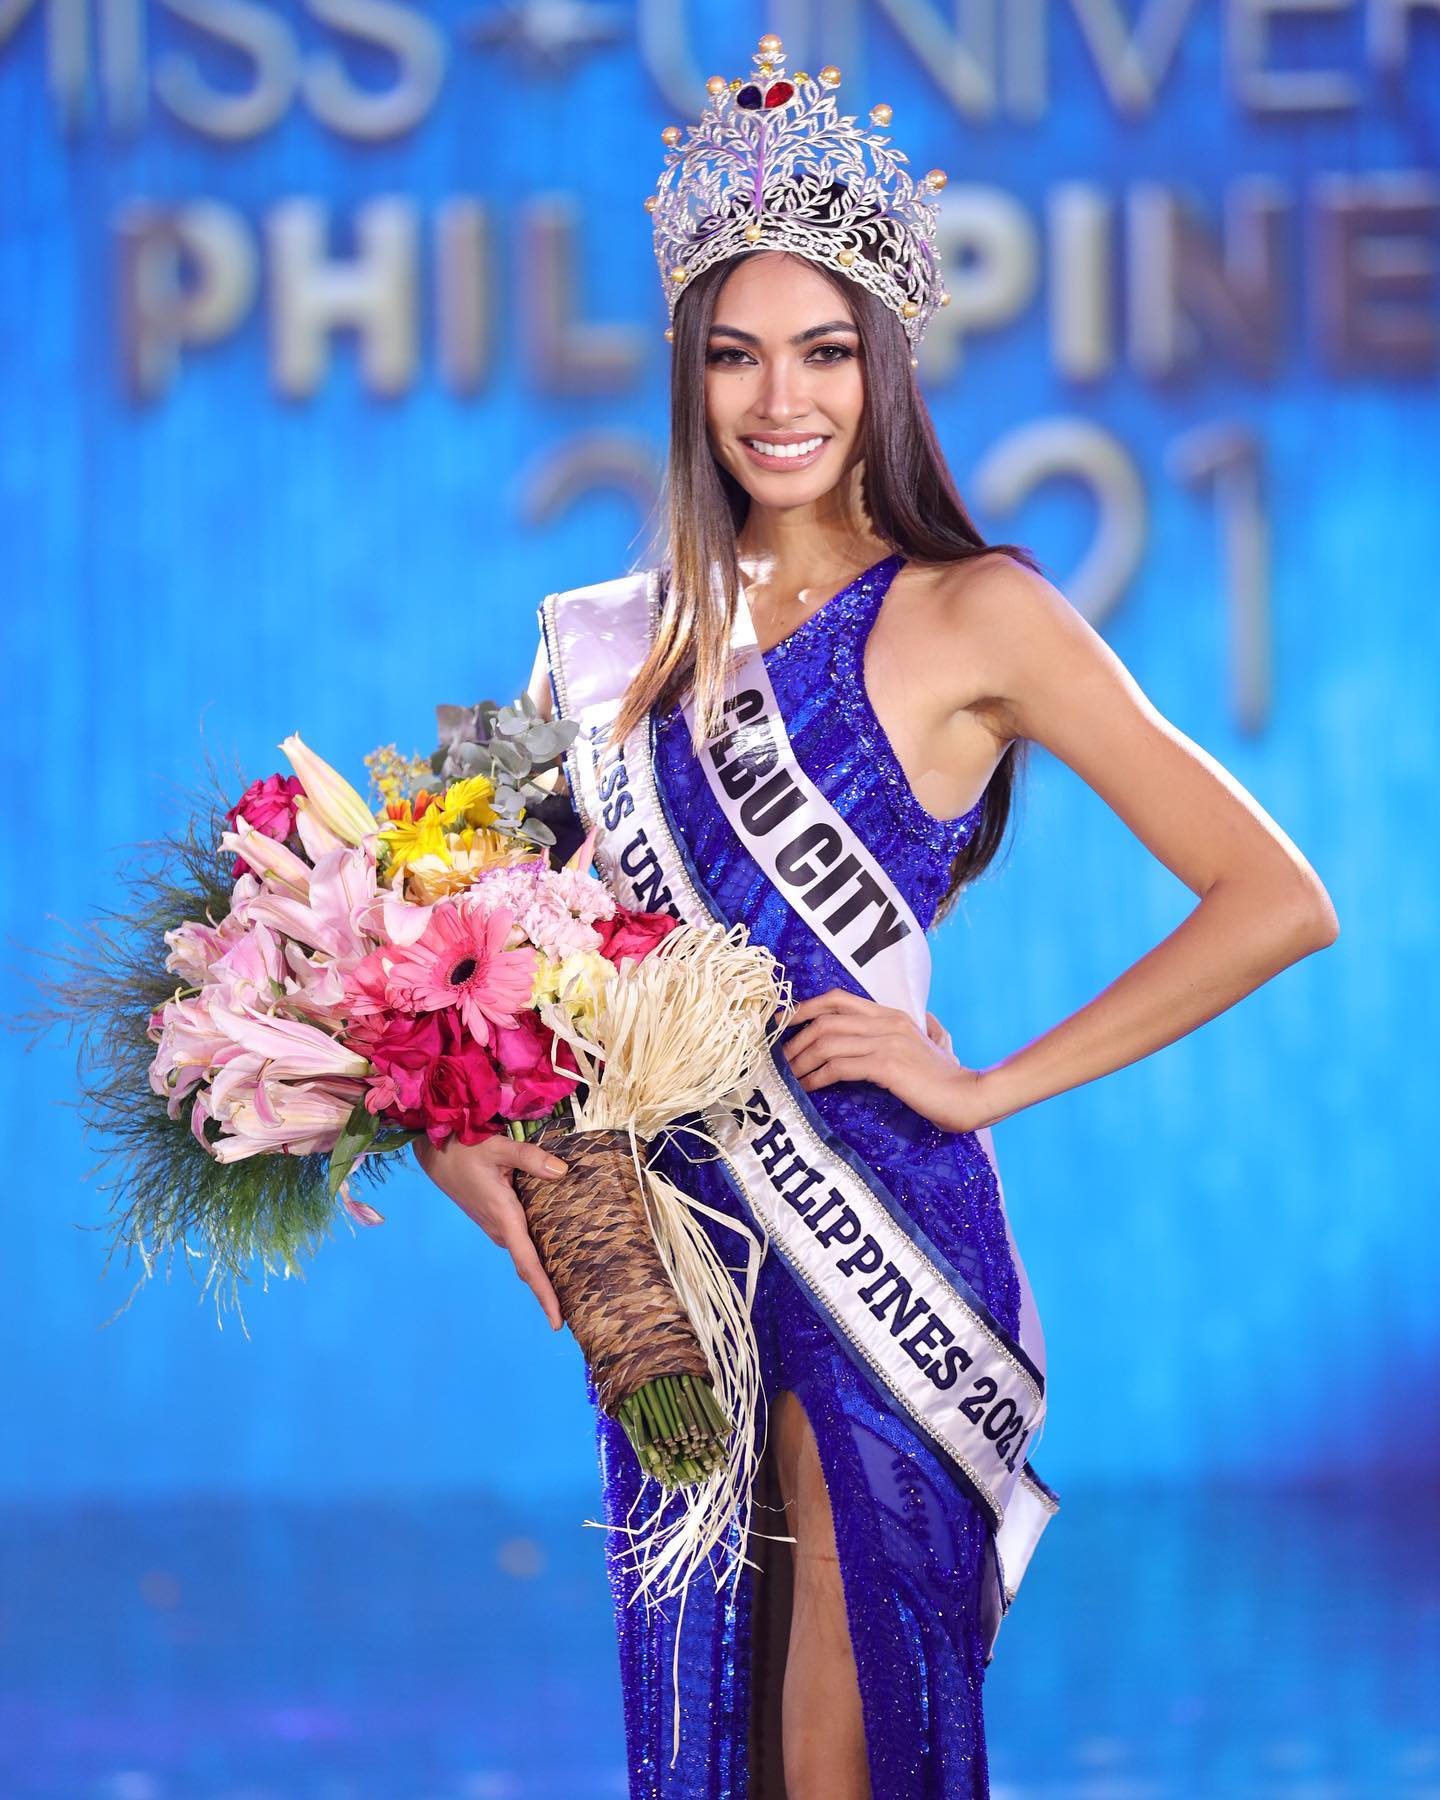 Hoa hậu Hoàn vũ Philippines khi mới đăng quang. Cô sẽ tham dự Miss Universe ở Israel cuối năm nay. Ảnh: Facebook Beatrice Luigi Gomez